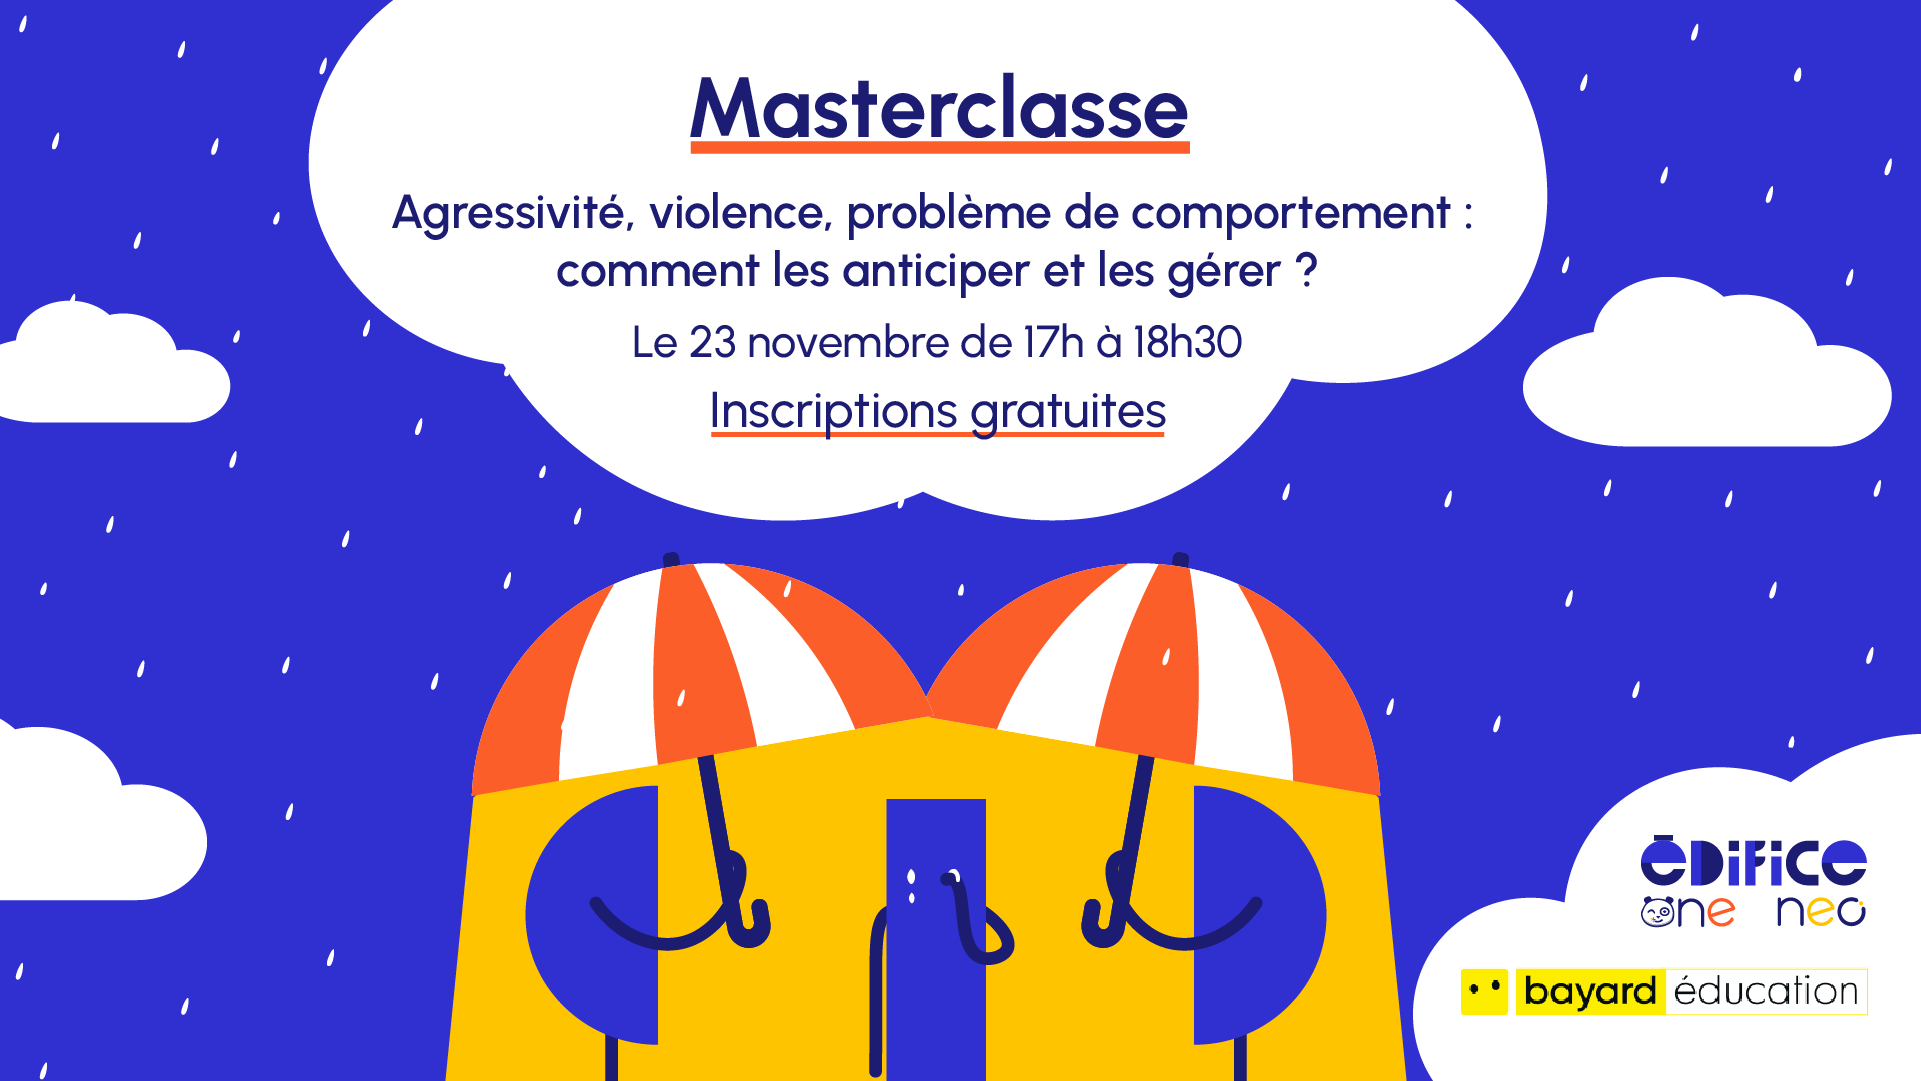 Visuel Masterclasse Agressivité, violence et problèmes de comportement du 23 novembre.